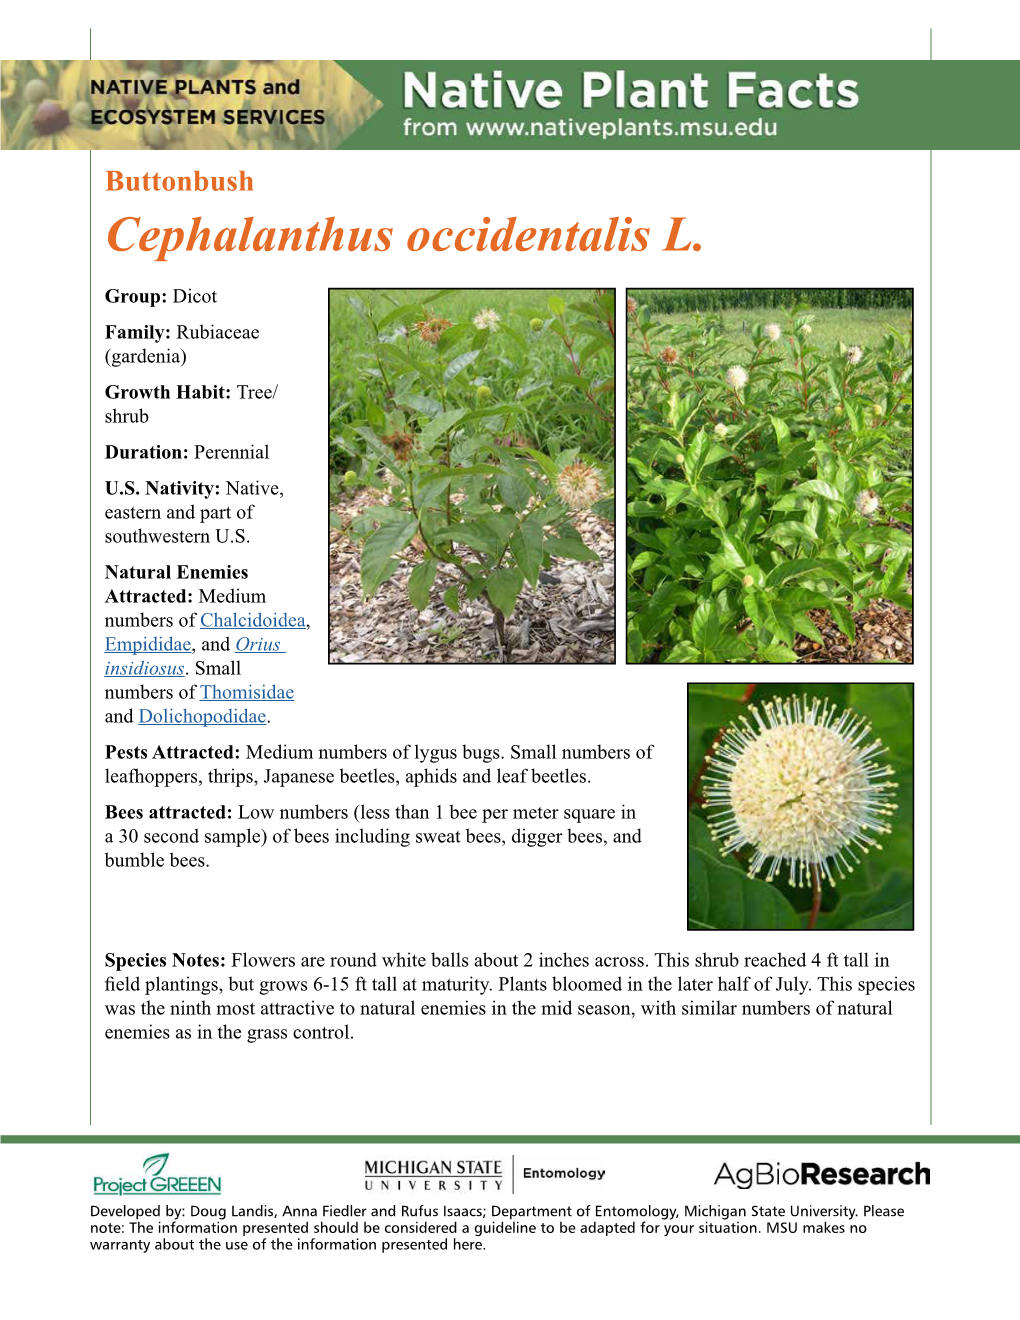 Buttonbush Cephalanthus Occidentalis L